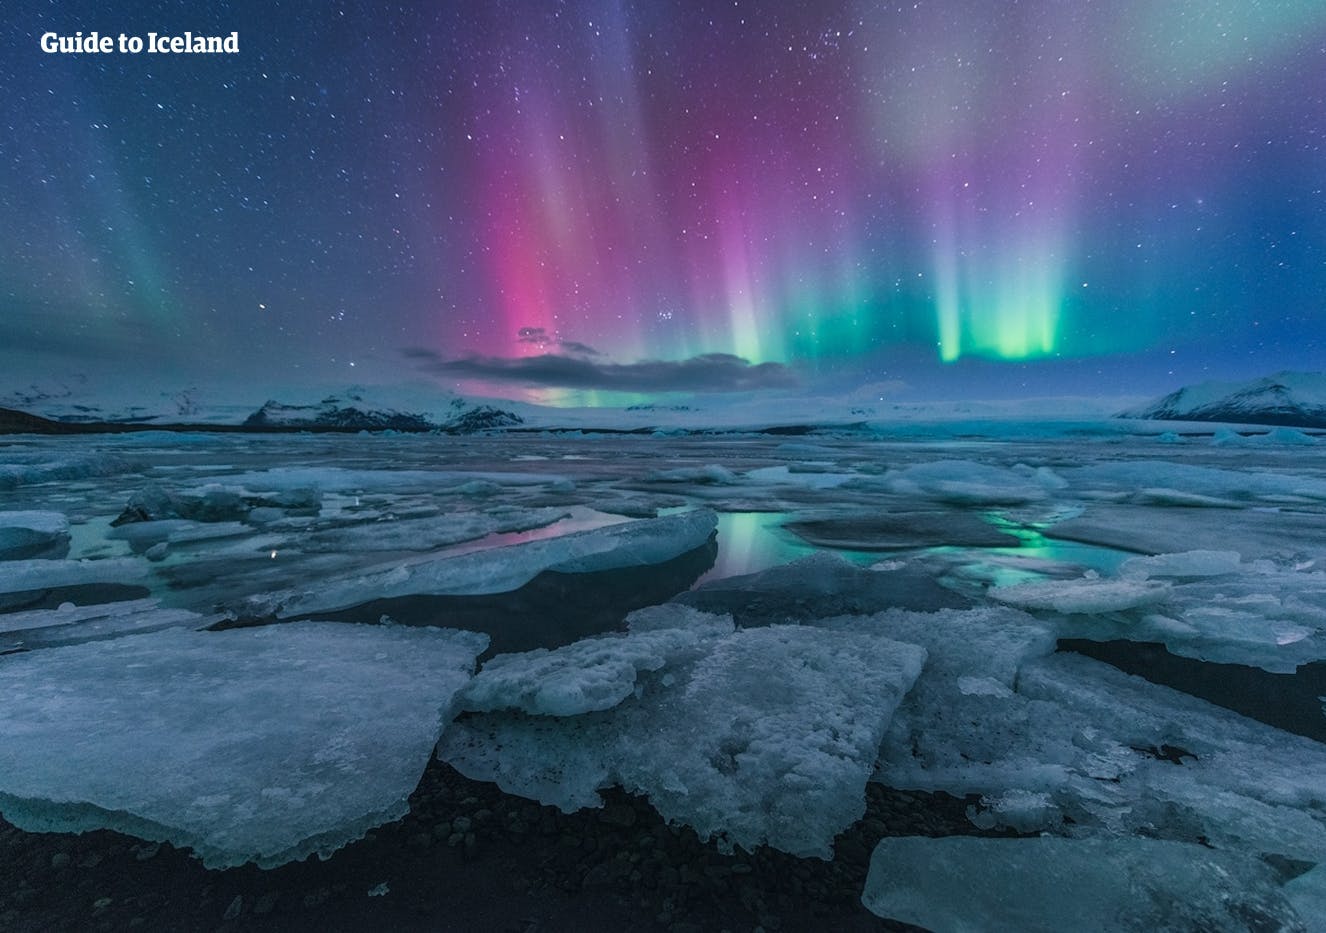 Piękna zorza polarna tańcząca na niebie nad laguną lodowcową Jökulsárlón.